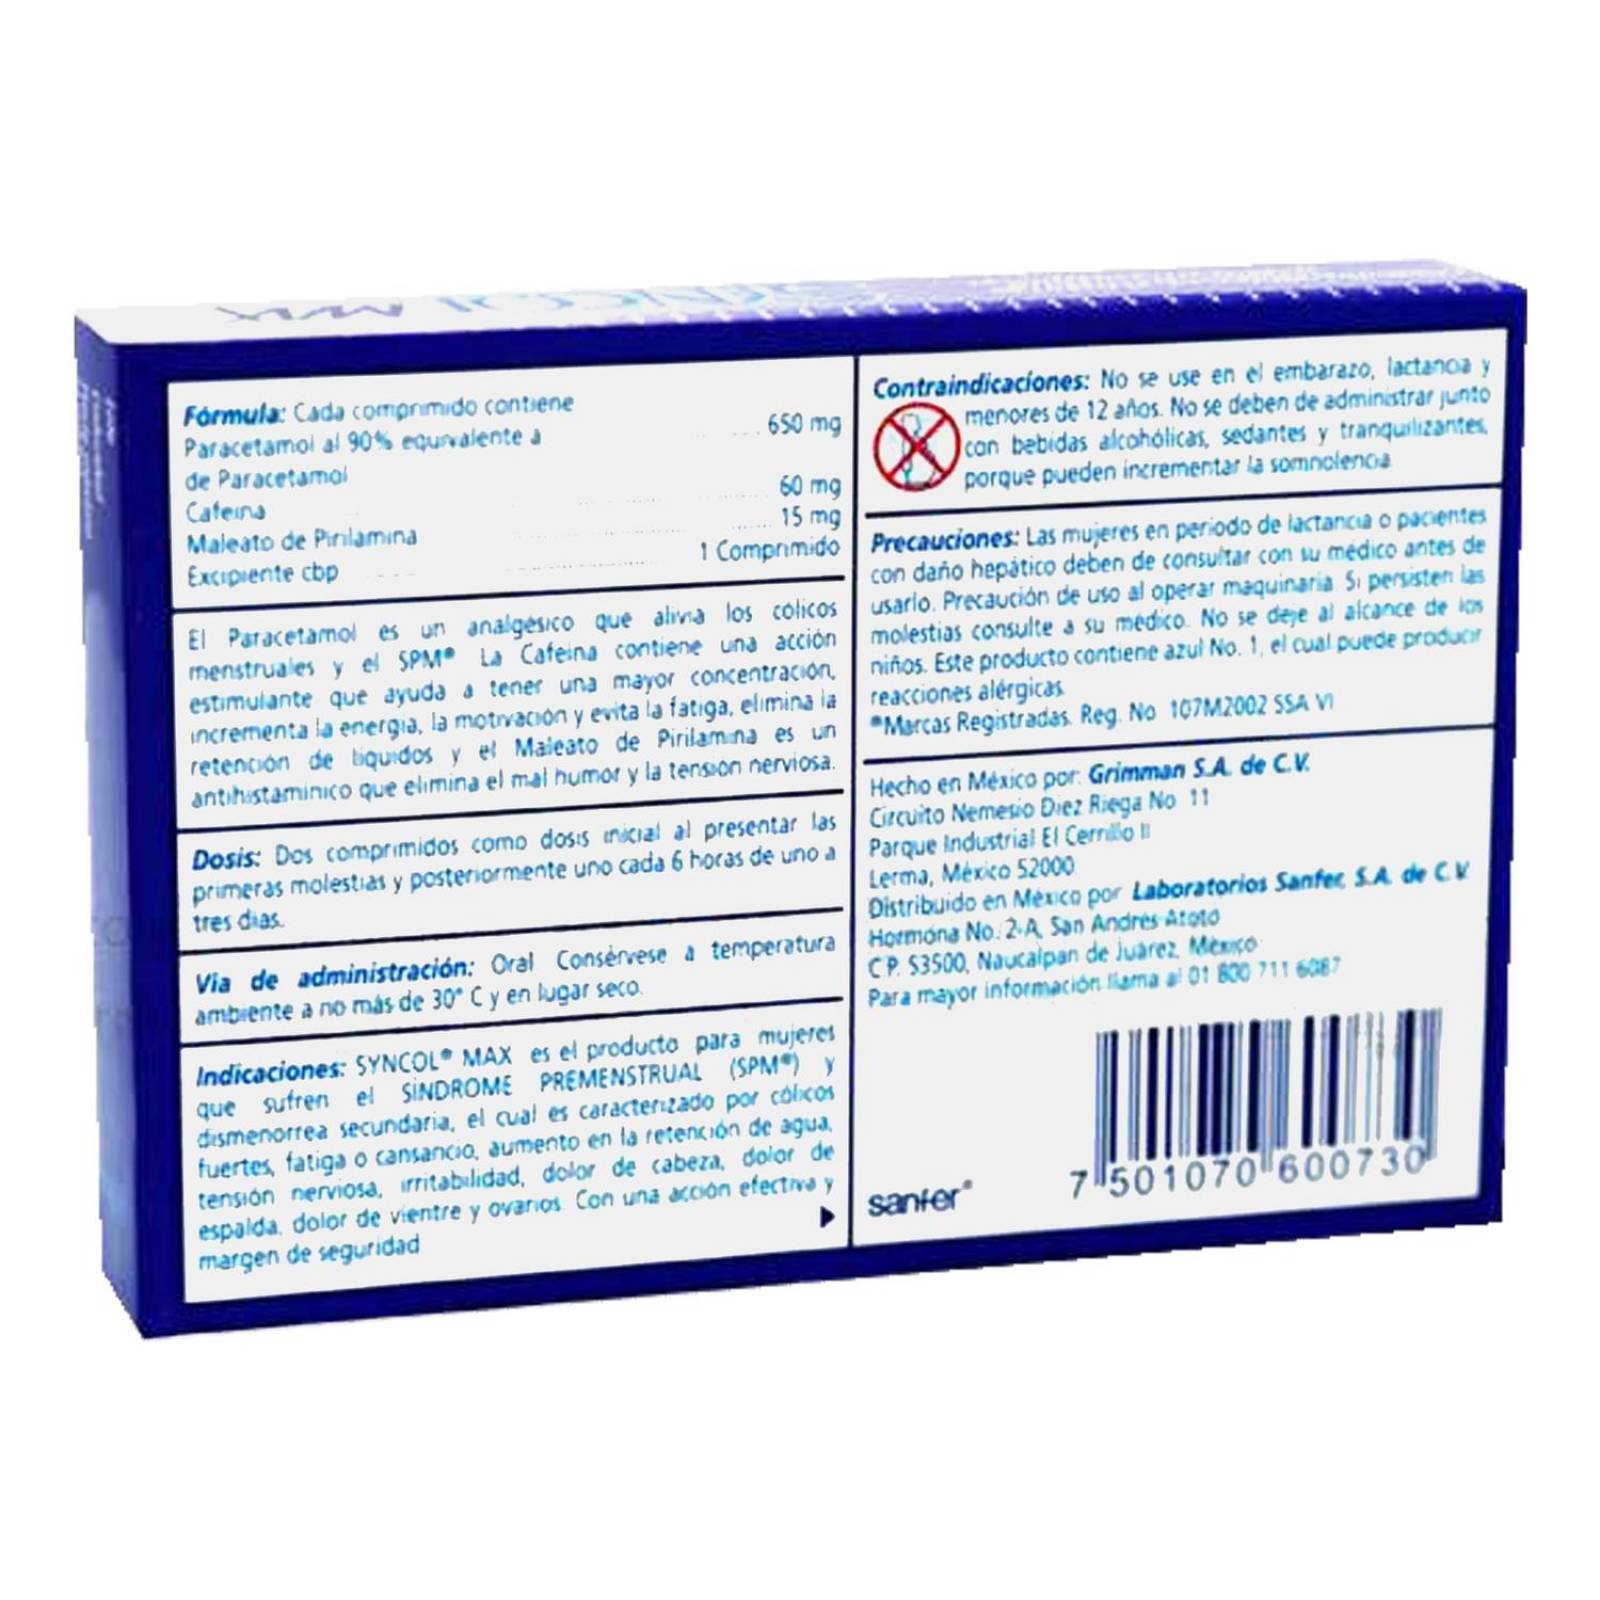 Syncol Max 650 mg/60 mg/15 mg Caja Con 12 Comprimidos 